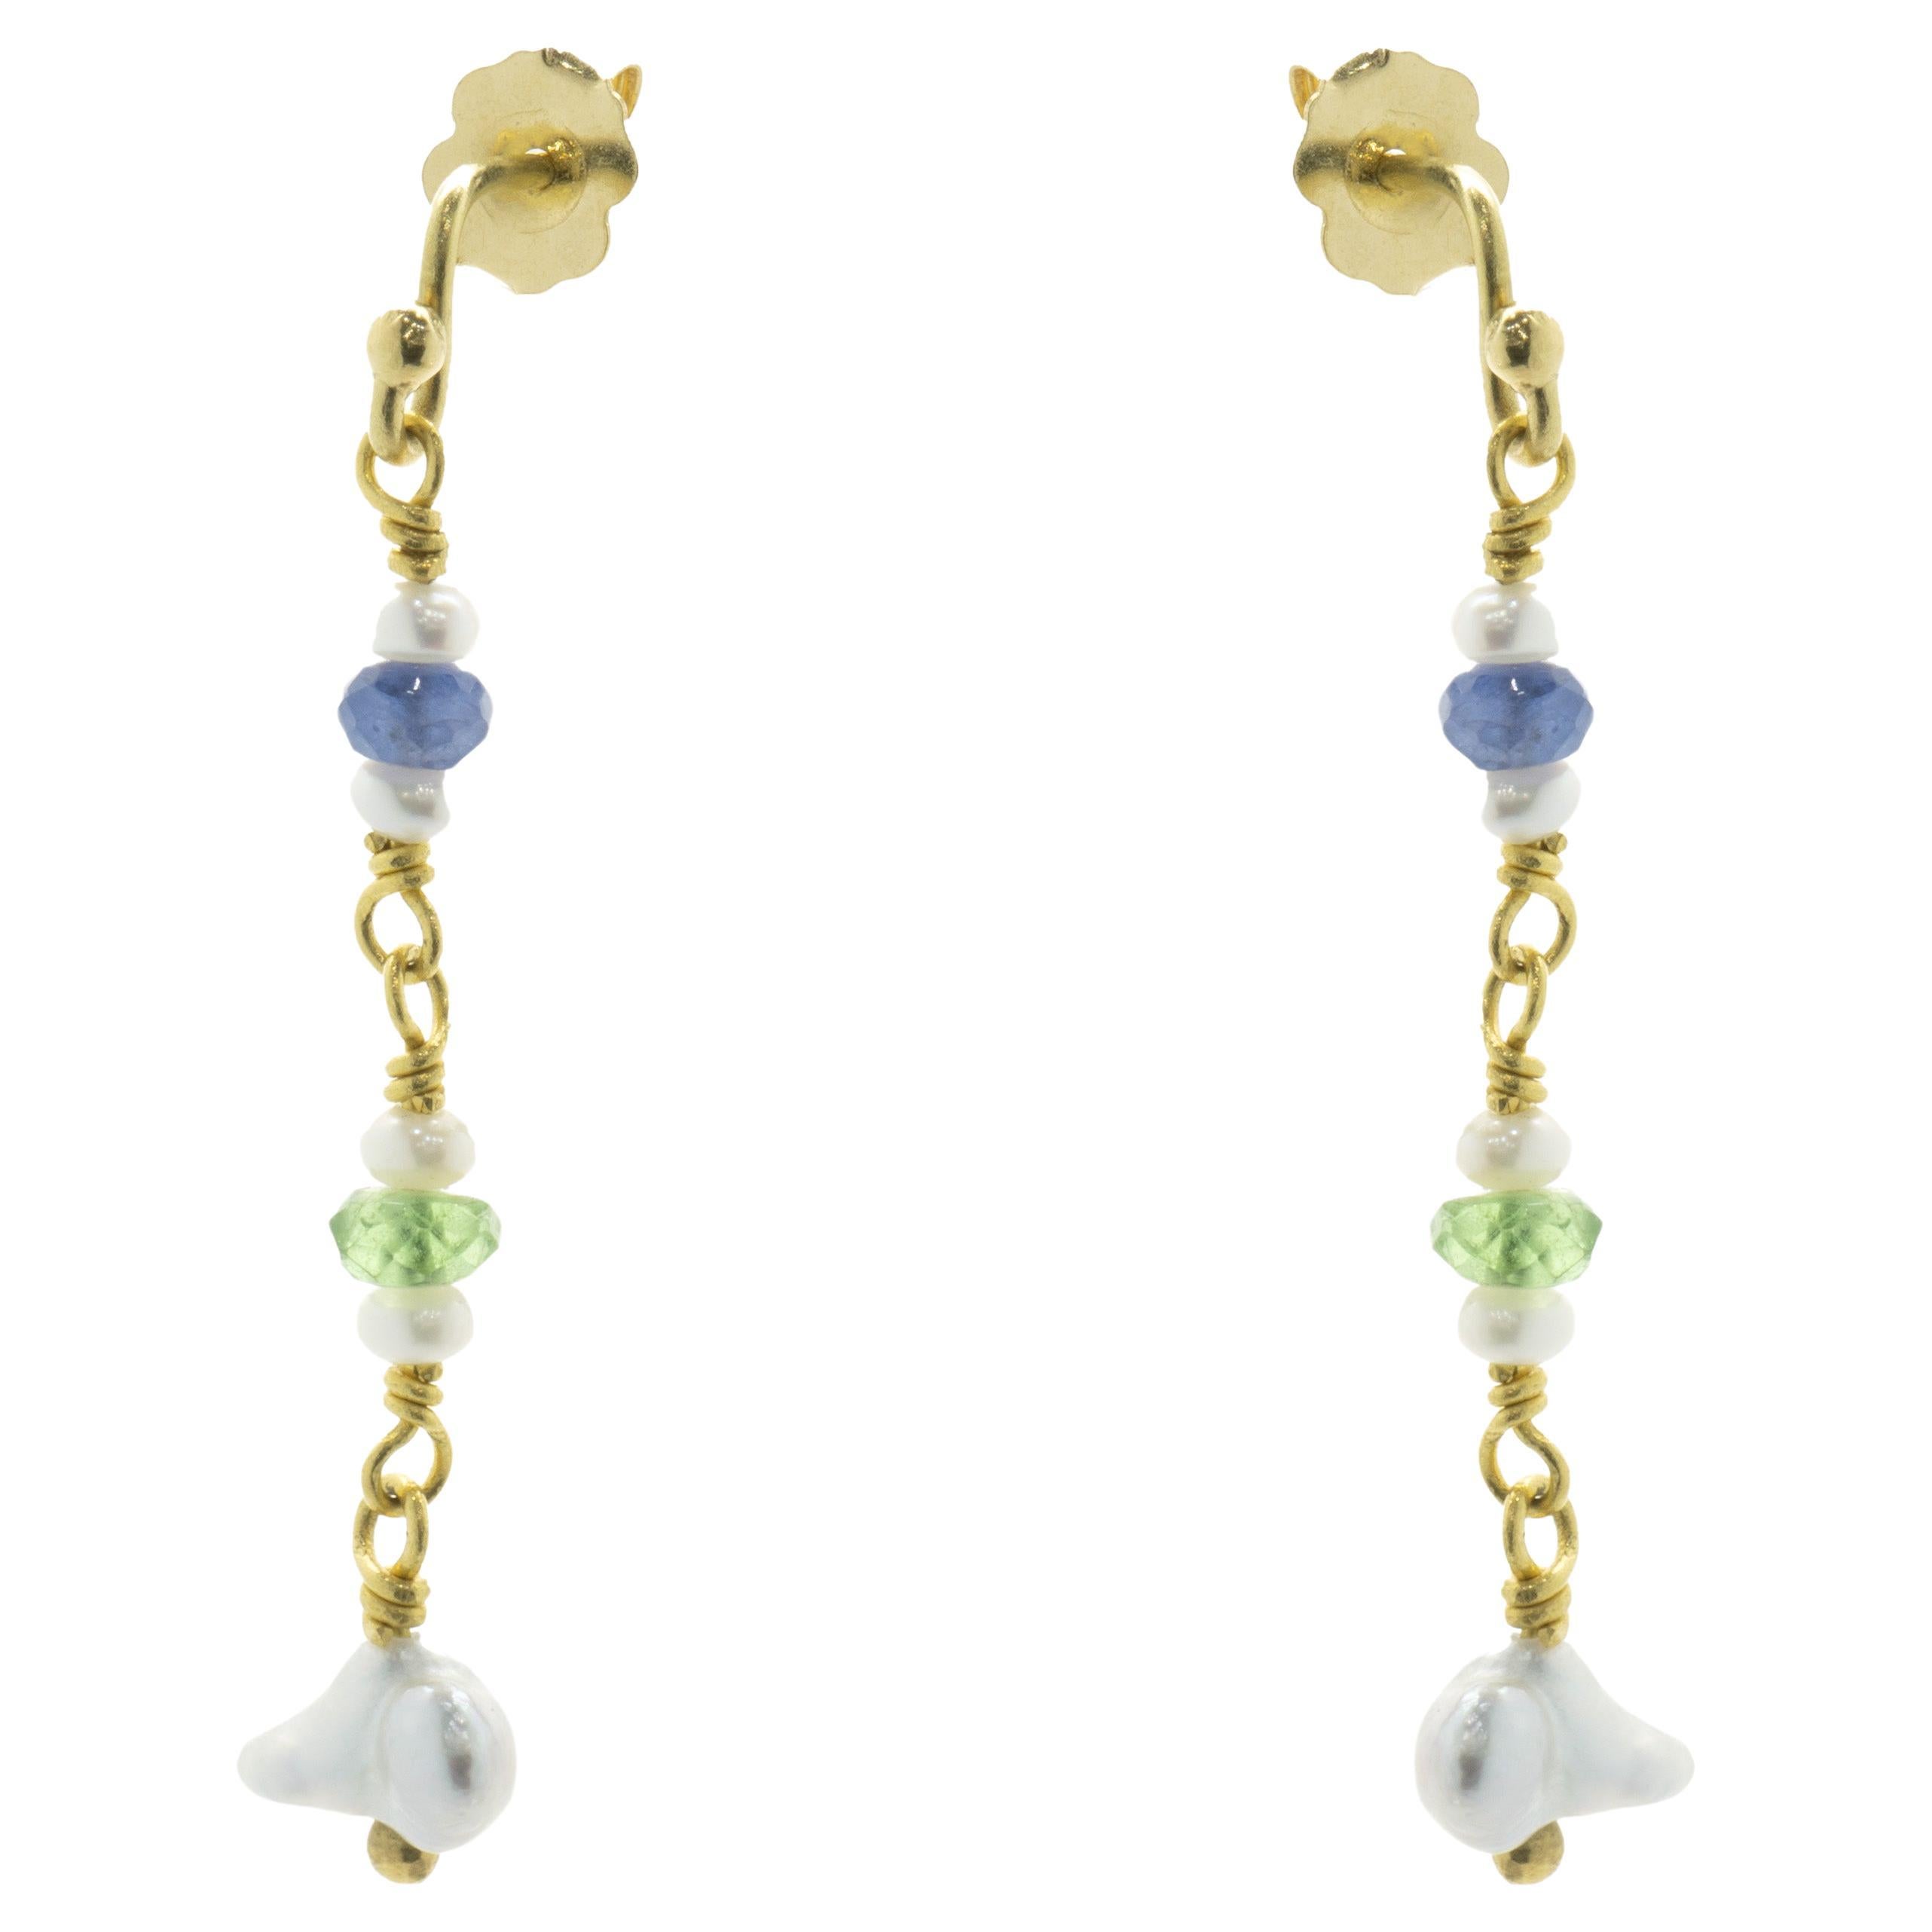 Beau Soleil, pendants d'oreilles en or jaune 18/22 carats avec perles, tourmalines et saphirs